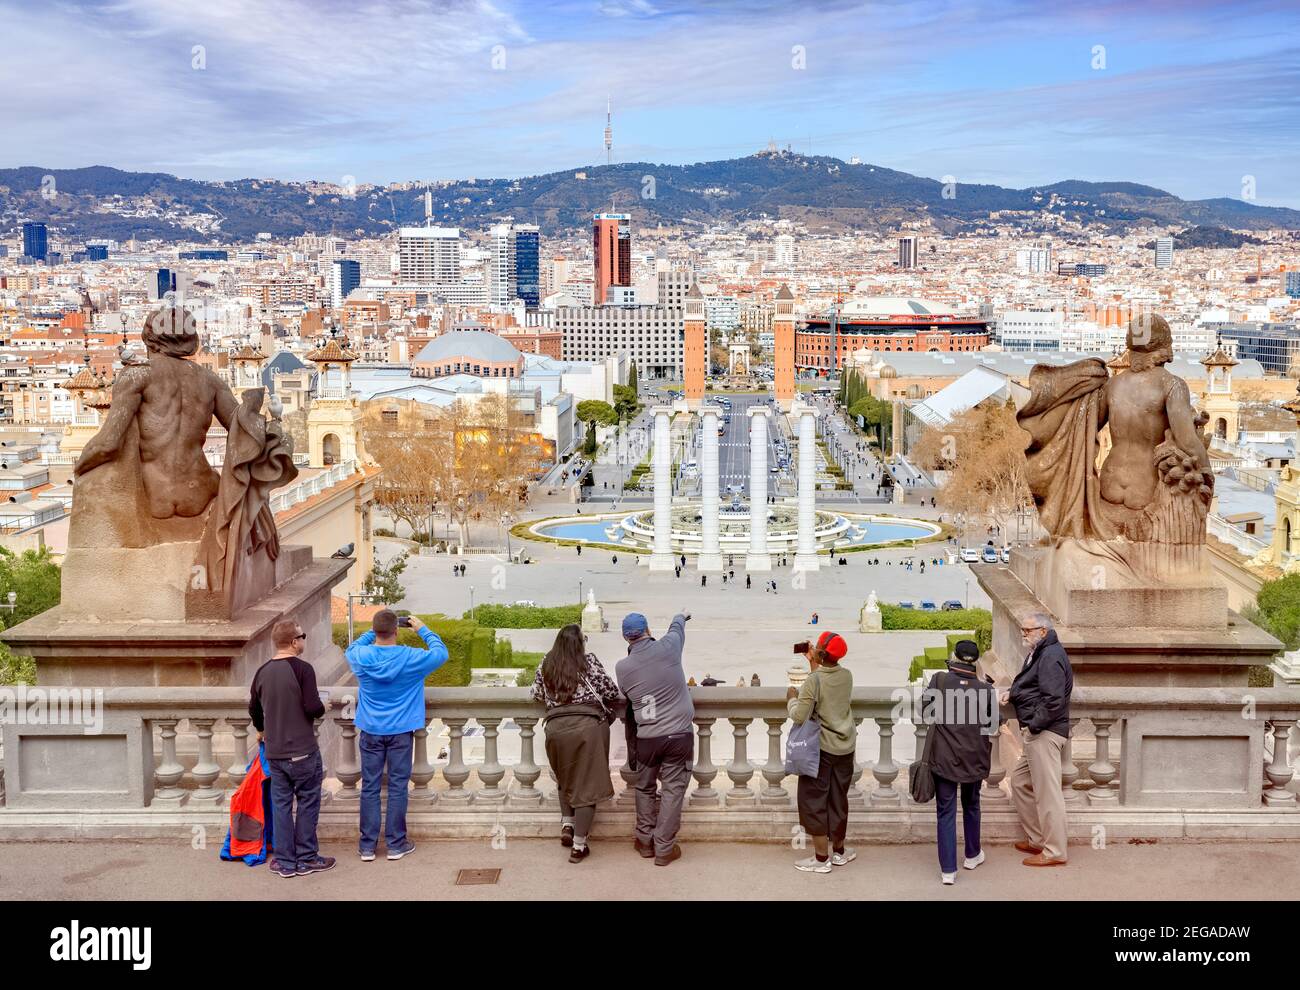 4 mars 2020: Barcelone, Espagne - visiteurs regardant Barcelone depuis le Musée national d'Art de Catalogne vers la Plaça d'Espanya et le Mont Tibidabo. Banque D'Images